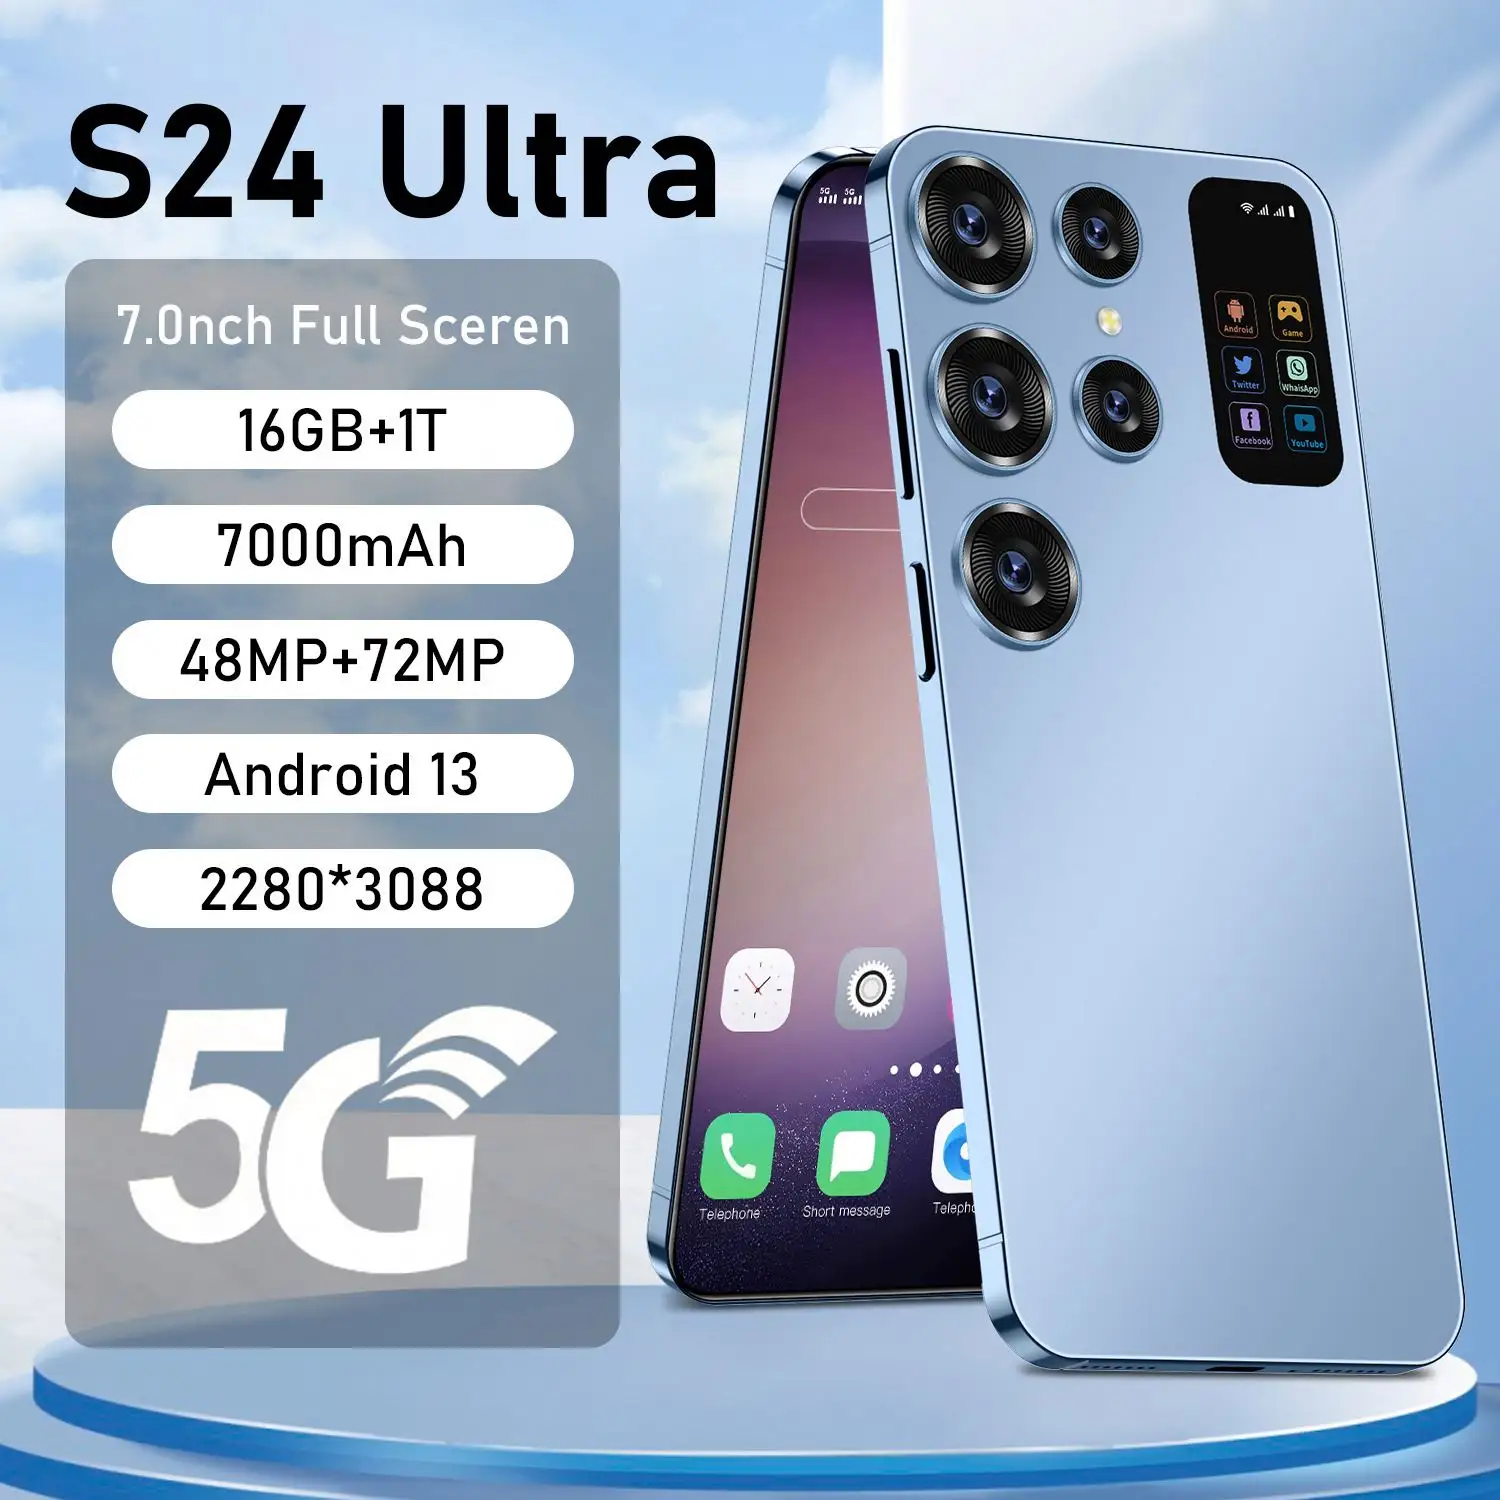 Real 4G LTE Network US CDMA S24 U Itra смартфон 7,2 дюймов Android 12 Разблокировка мобильного телефона groabal версия